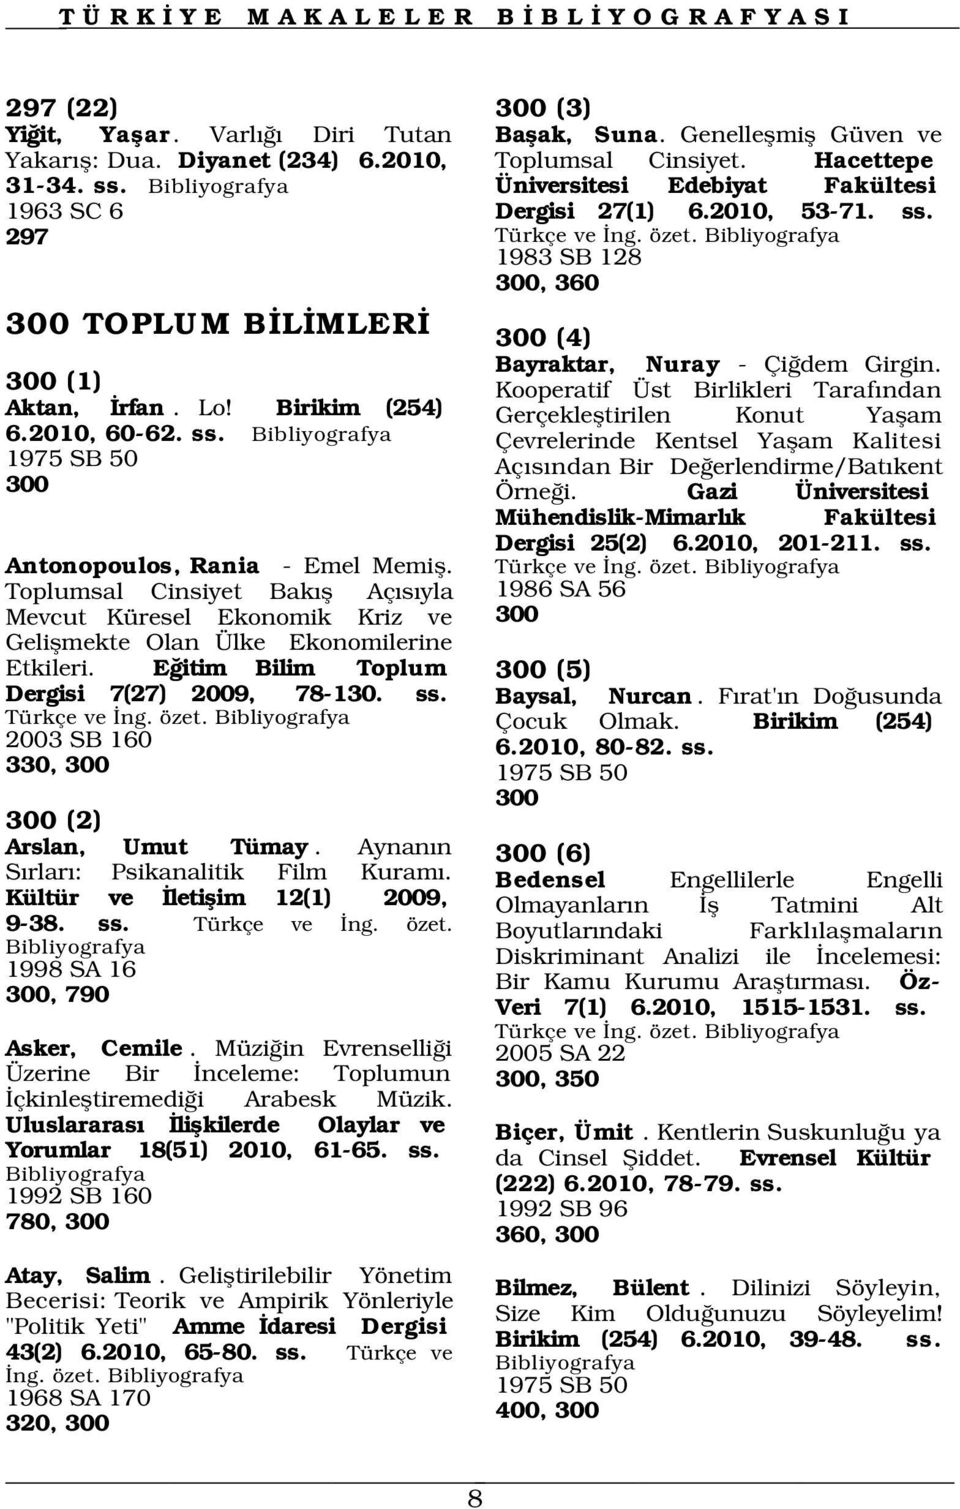 2003 SB 160 330, 300 1975 SB 50 300 300 (2) Arslan, Umut Tümay. Aynan n S rlar : Psikanalitik Film Kuram. Kültür ve letiflim 12(1) 2009, 9-38. ss. Türkçe ve ng. özet.